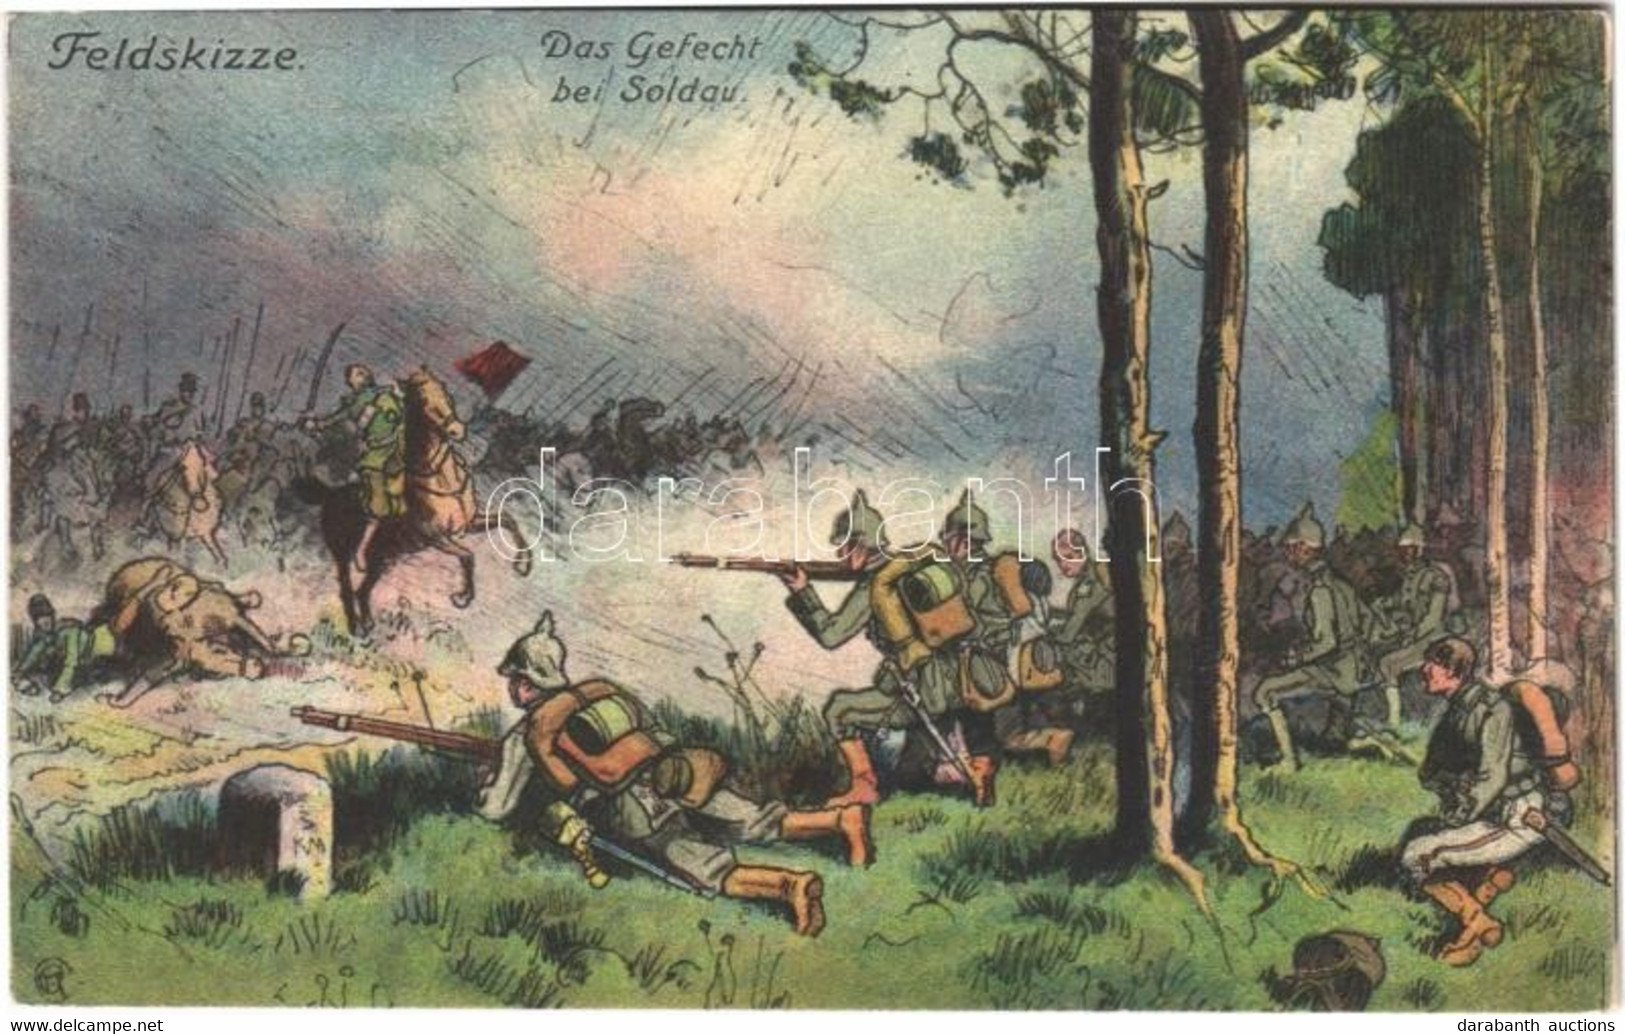 T2/T3 1914 Gefecht Bei Soldau. Der Weltkrieg 1914. Feldskizze / WWI German Military Art Postcard (EK) - Unclassified